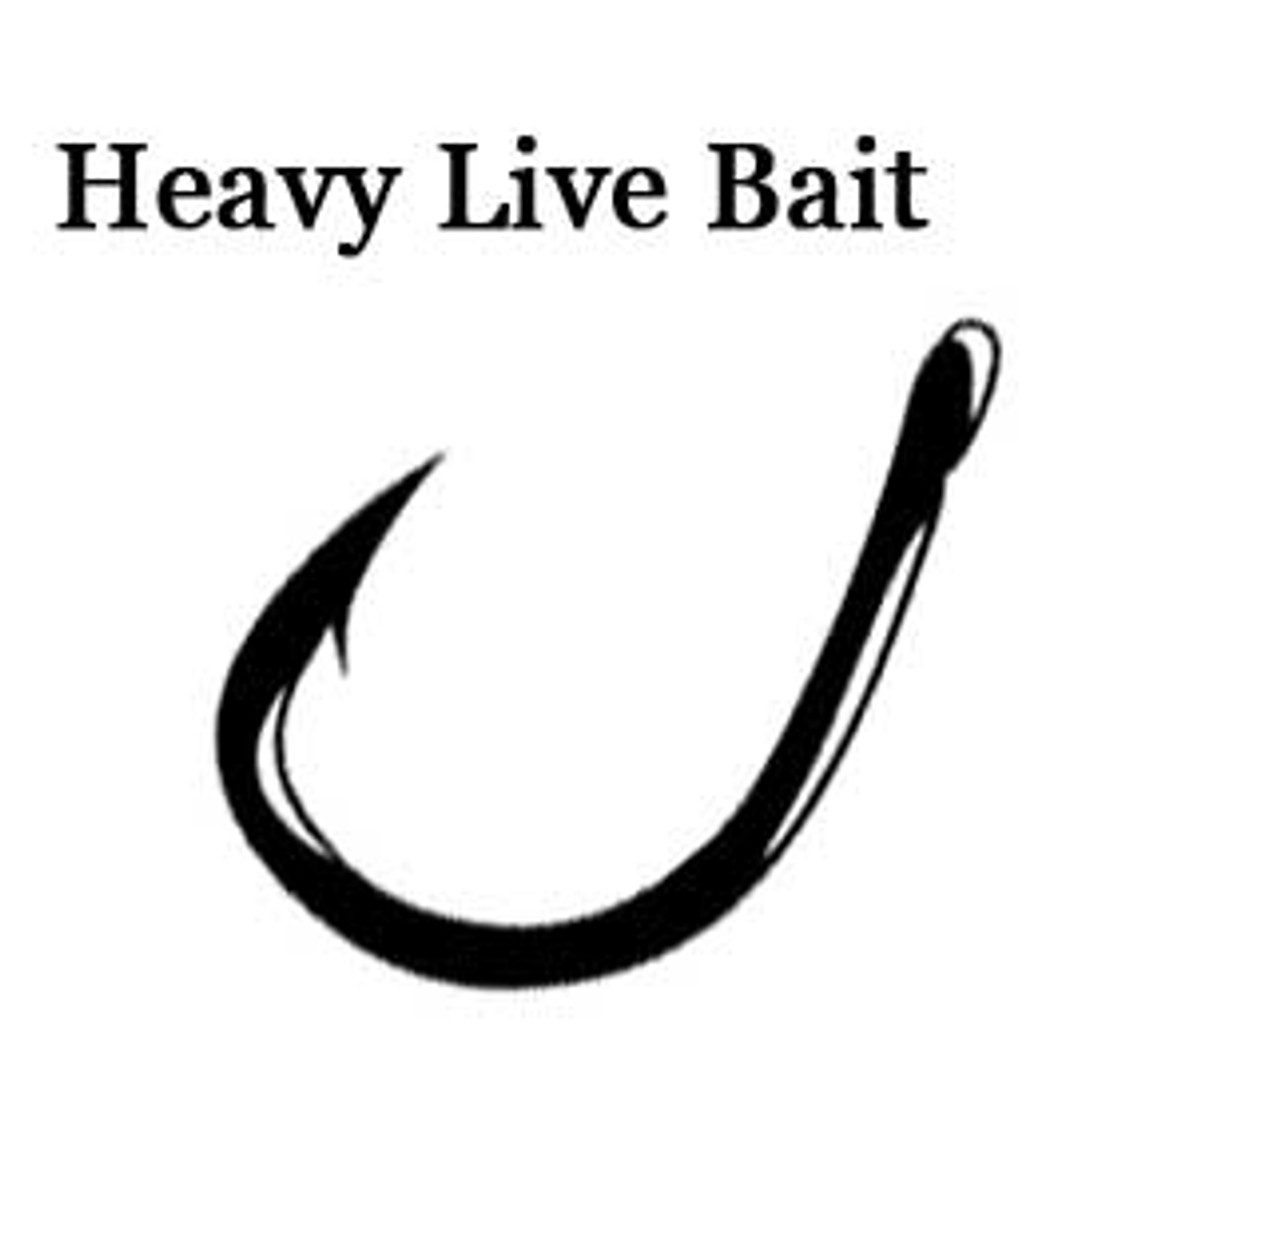 Gamakatsu live bait fishing hook